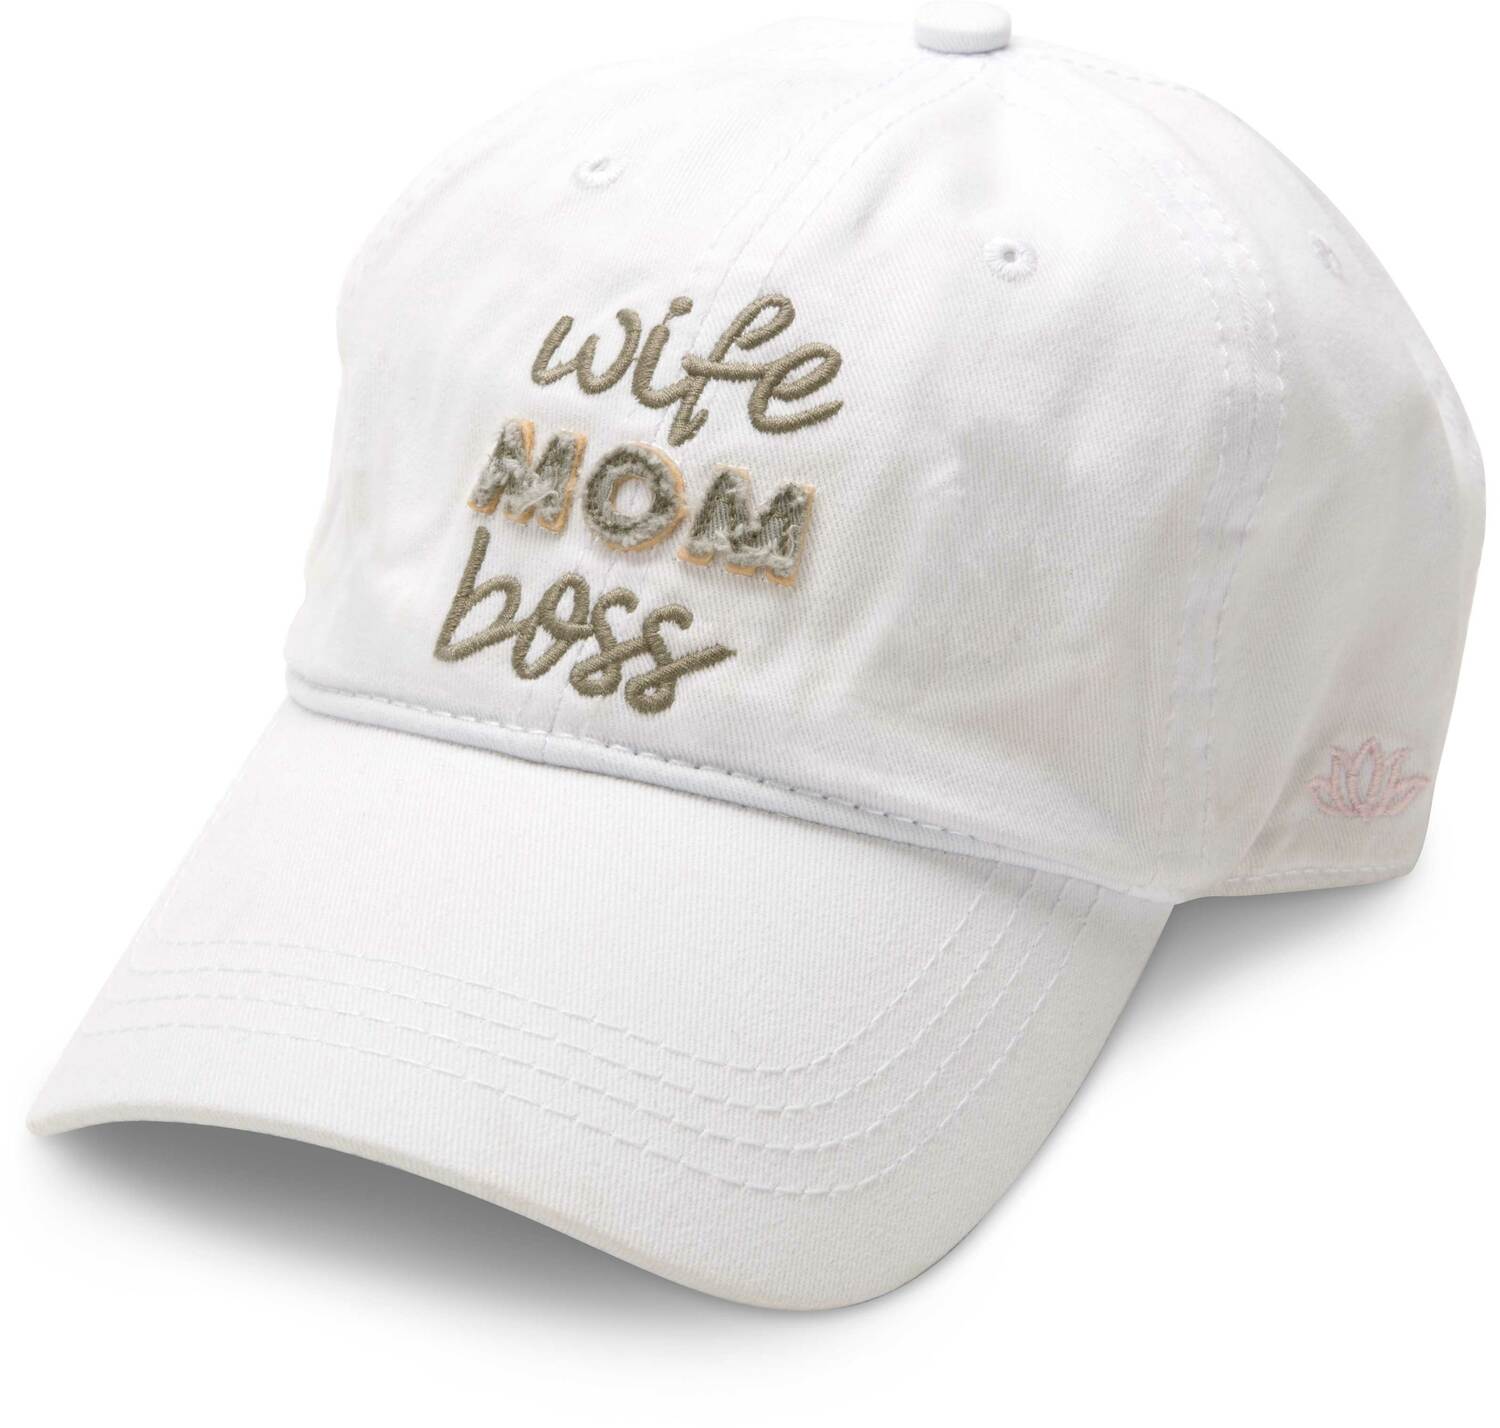 wife mom boss hat